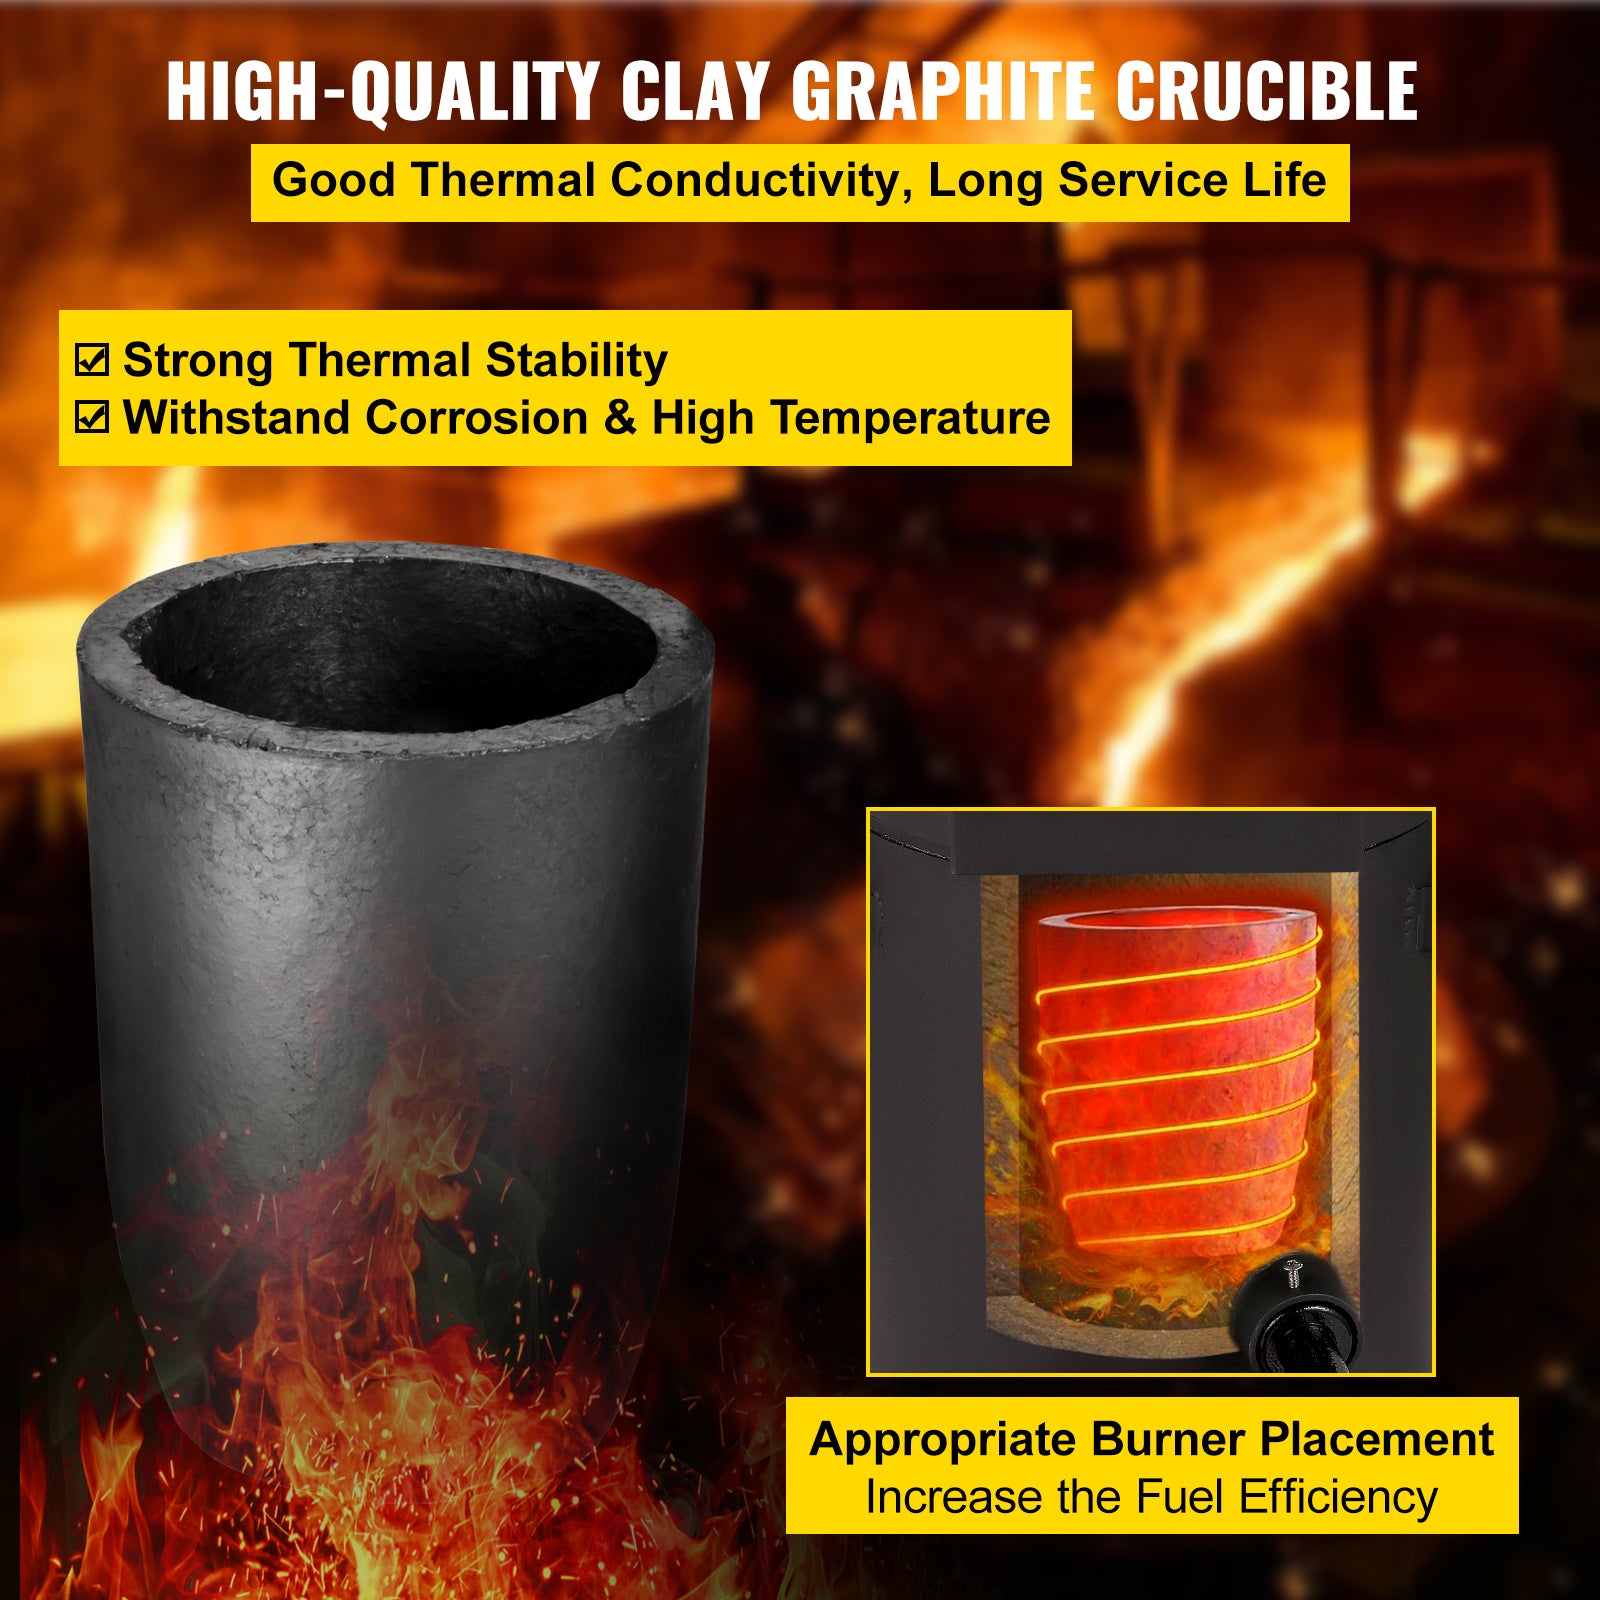 Furnace de topire cu propan, performanță puternică de încălzire, recuperare metale prețioase.